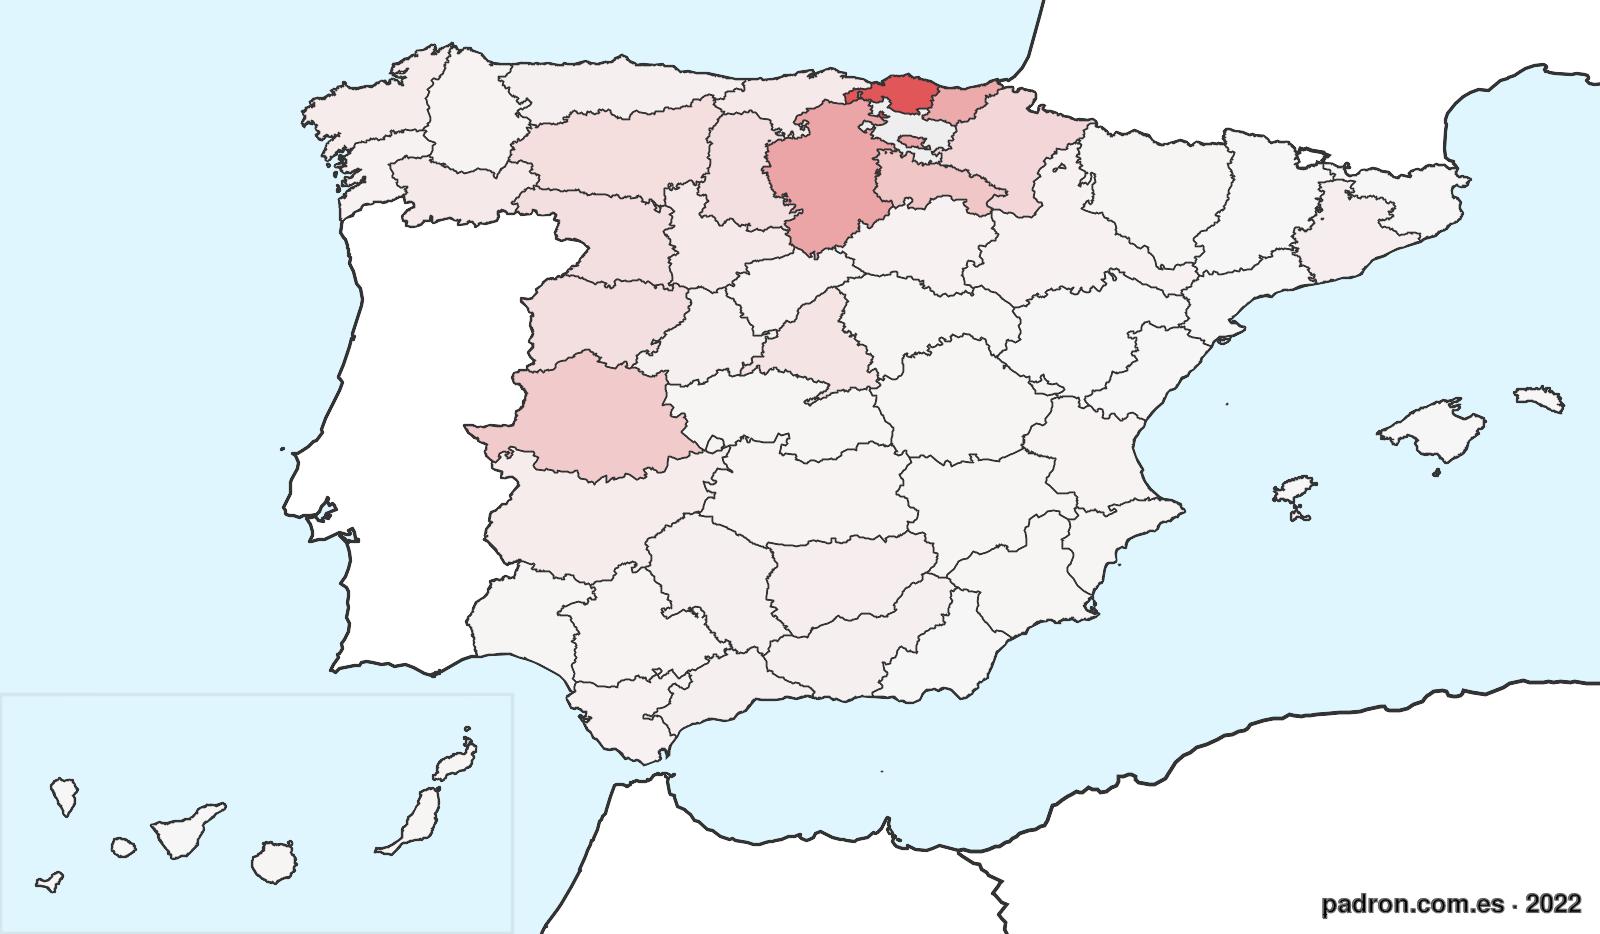 Población por provincia de origen en Araba/Álava